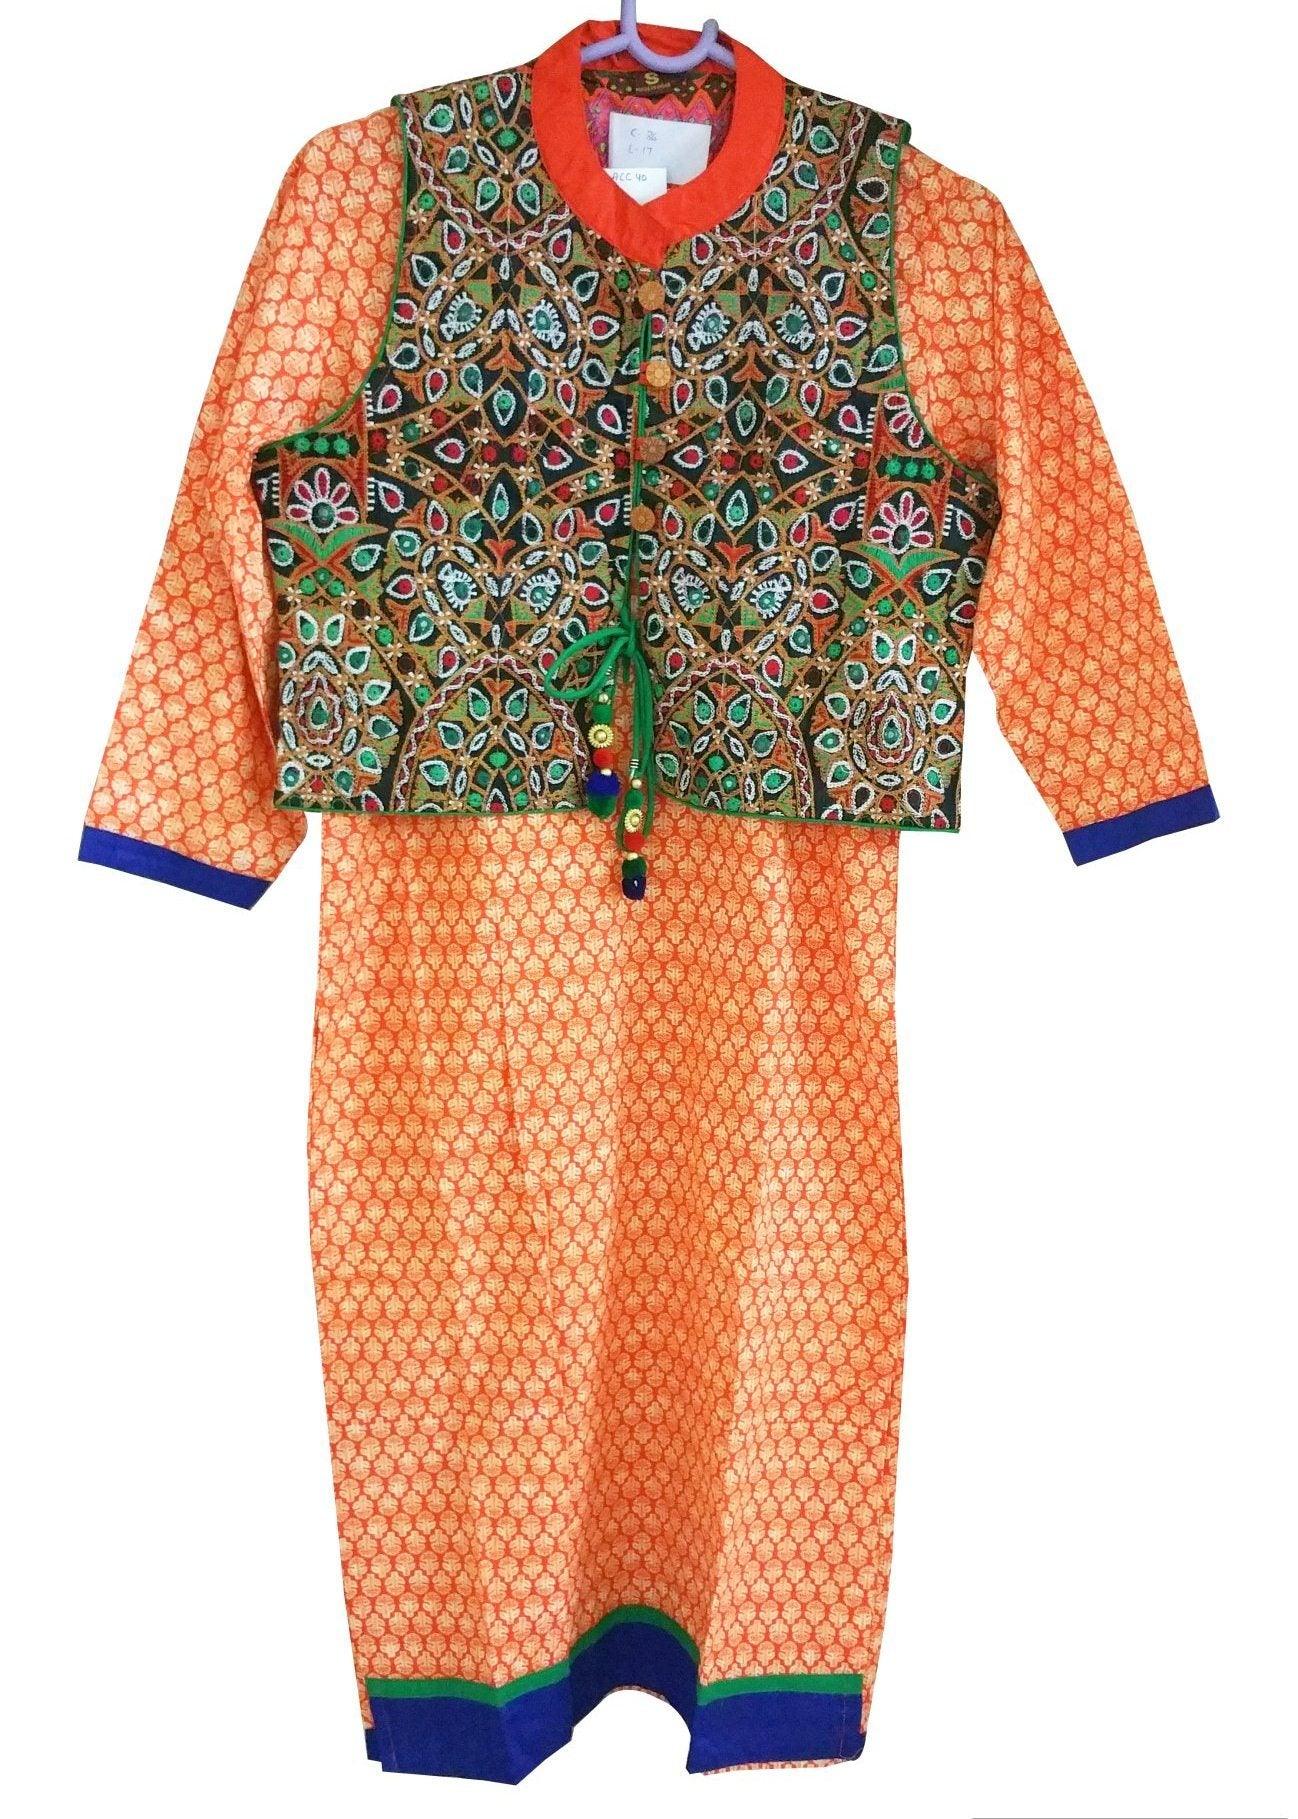 Orange Cotton Stitched Kurta With Embroidered Jacket Dress Size 38 ACC40-Anvi Creations-Kurta,Kurti,Top,Tunic